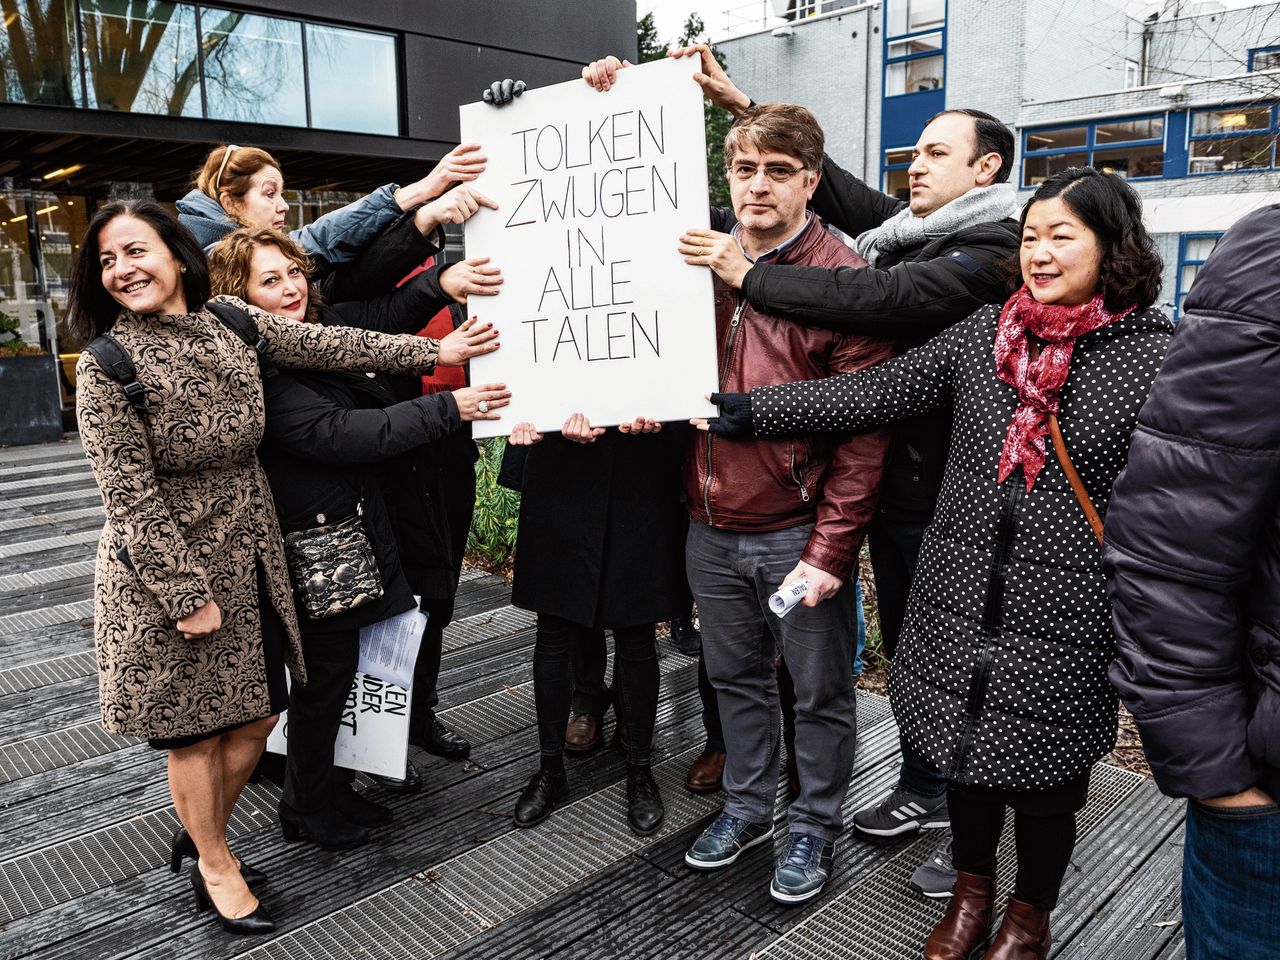 Protesten bij de rechtbank in Amsterdam. „Niemand ziet hoe belangrijk het tolkenwerk is, omdat we altijd op de achtergrond opereren.”